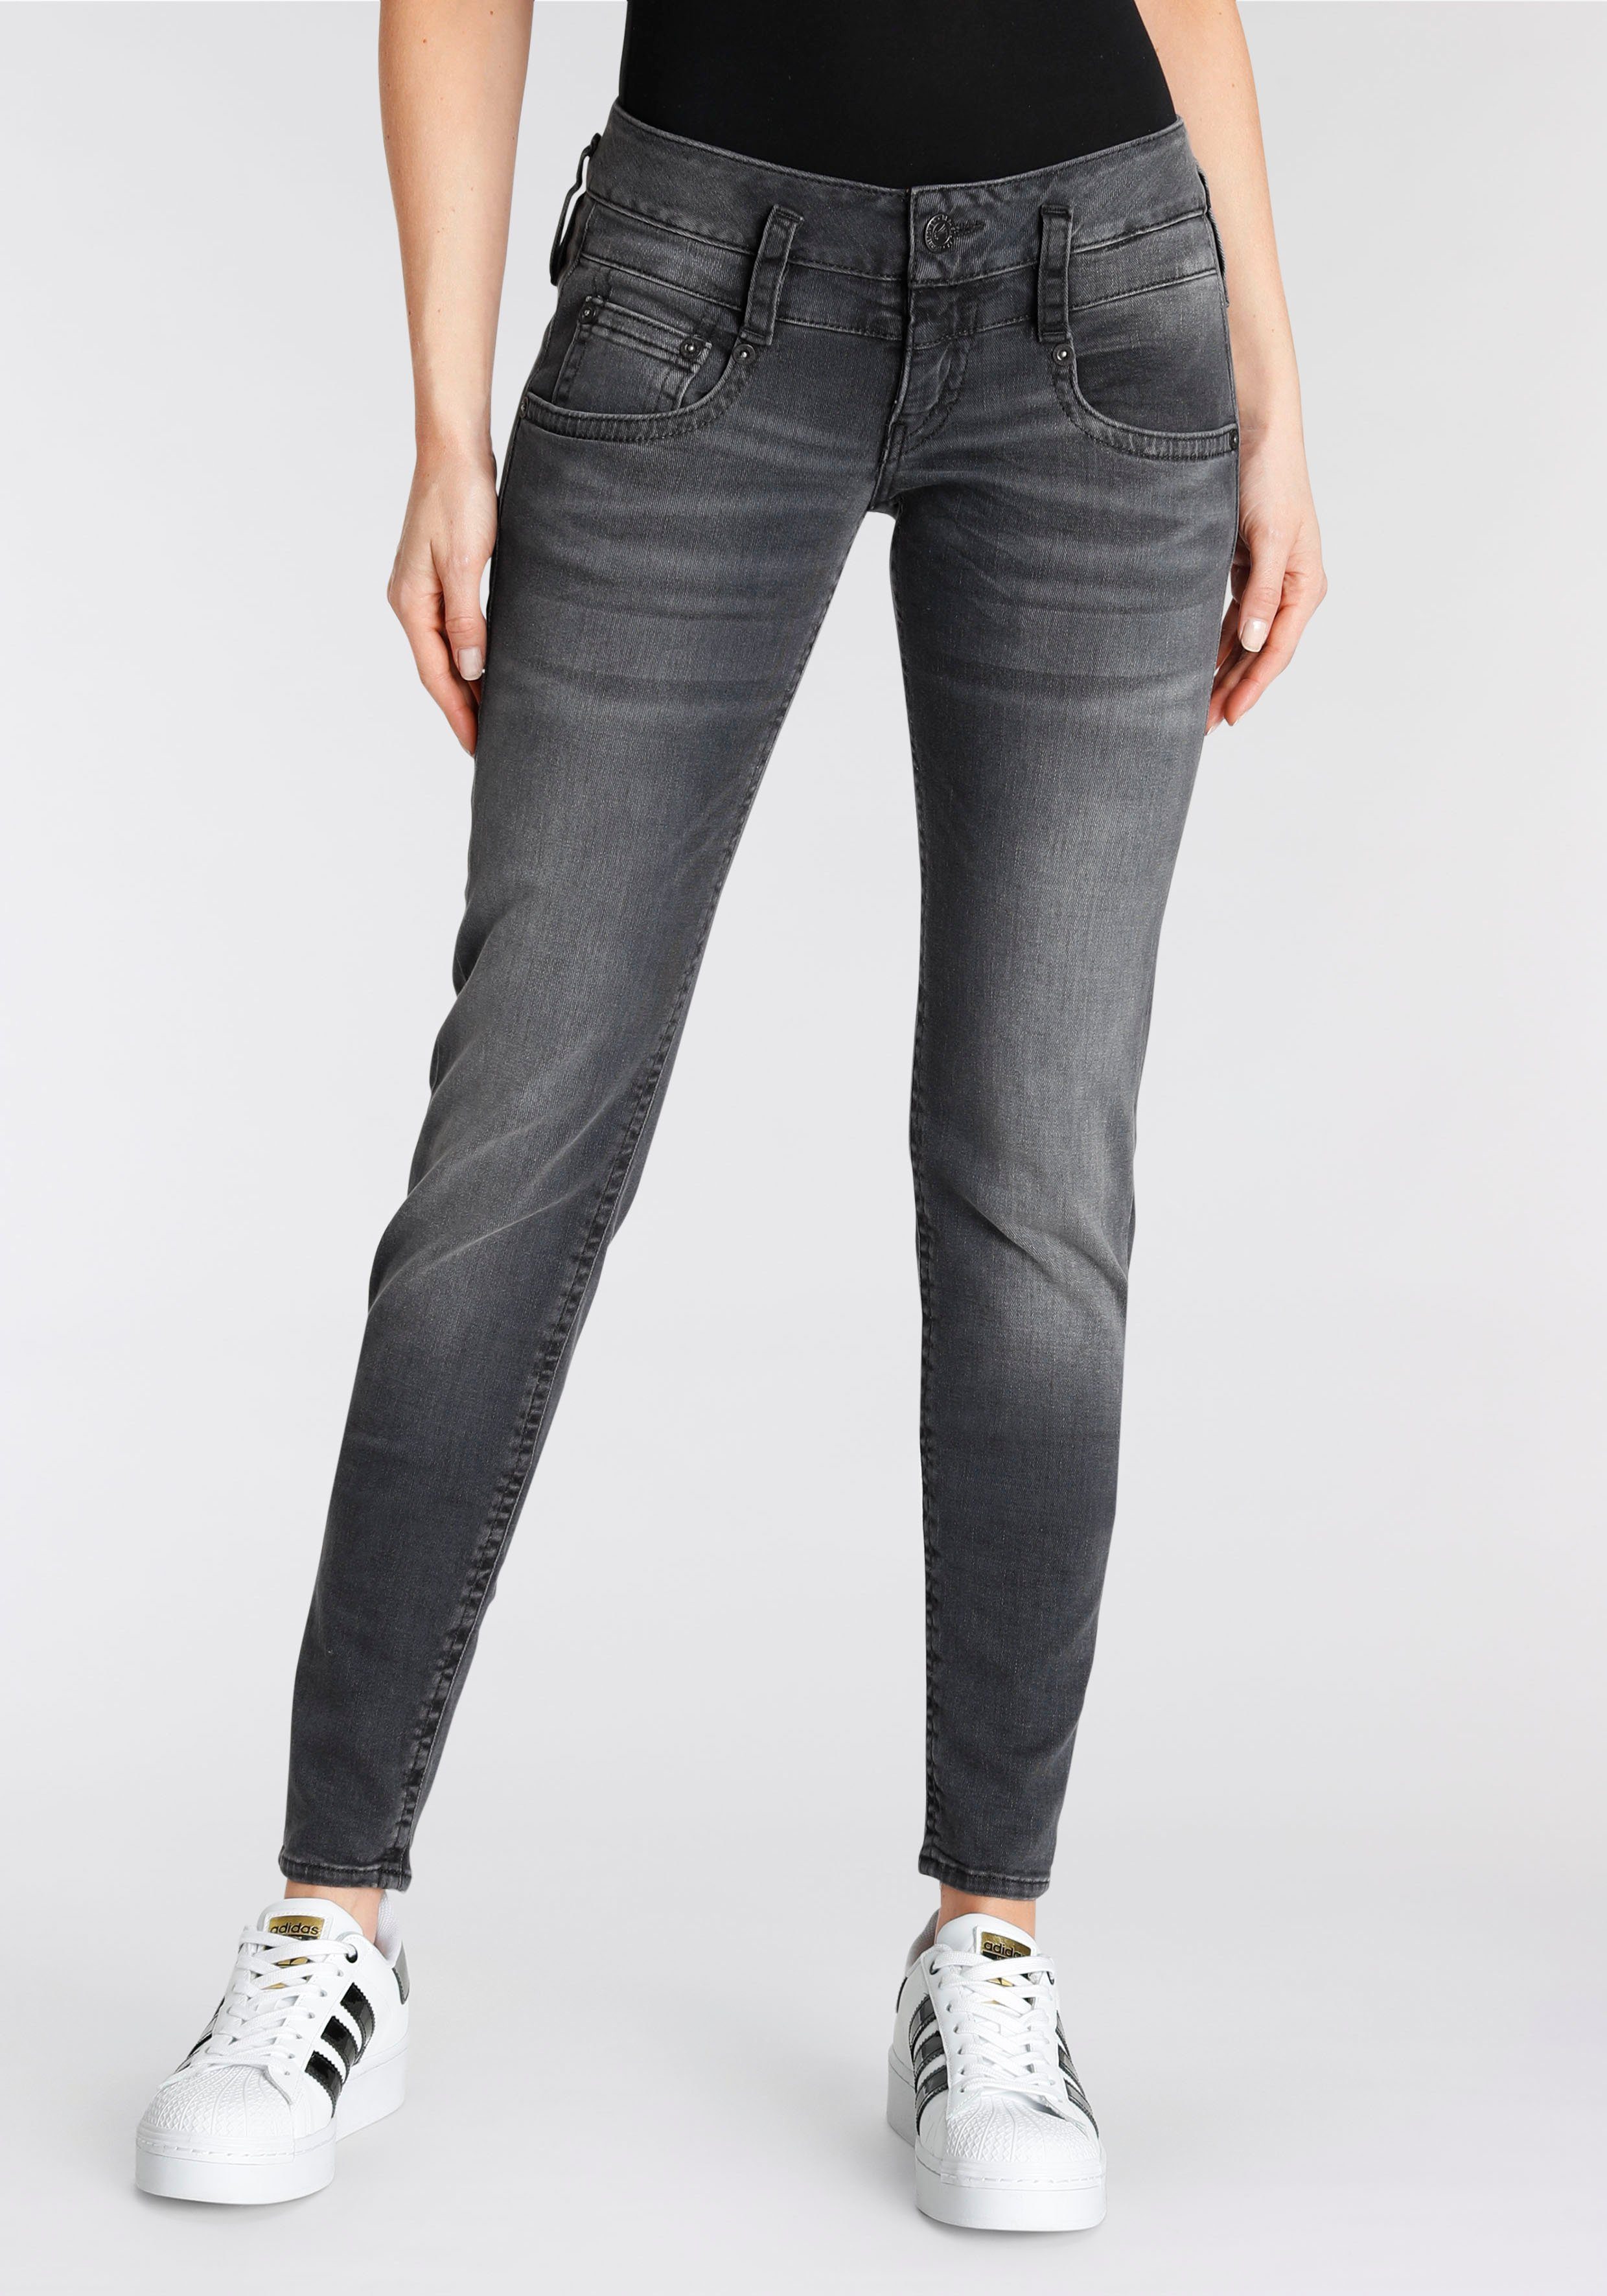 Herrlicher Organic Pitch für Tiefsitzende Slim komfortabel, Push-up-Effekt Denim einen leichten Cashmere Slim-fit-Jeans Gesäßtaschen asymmetrische sorgen extra